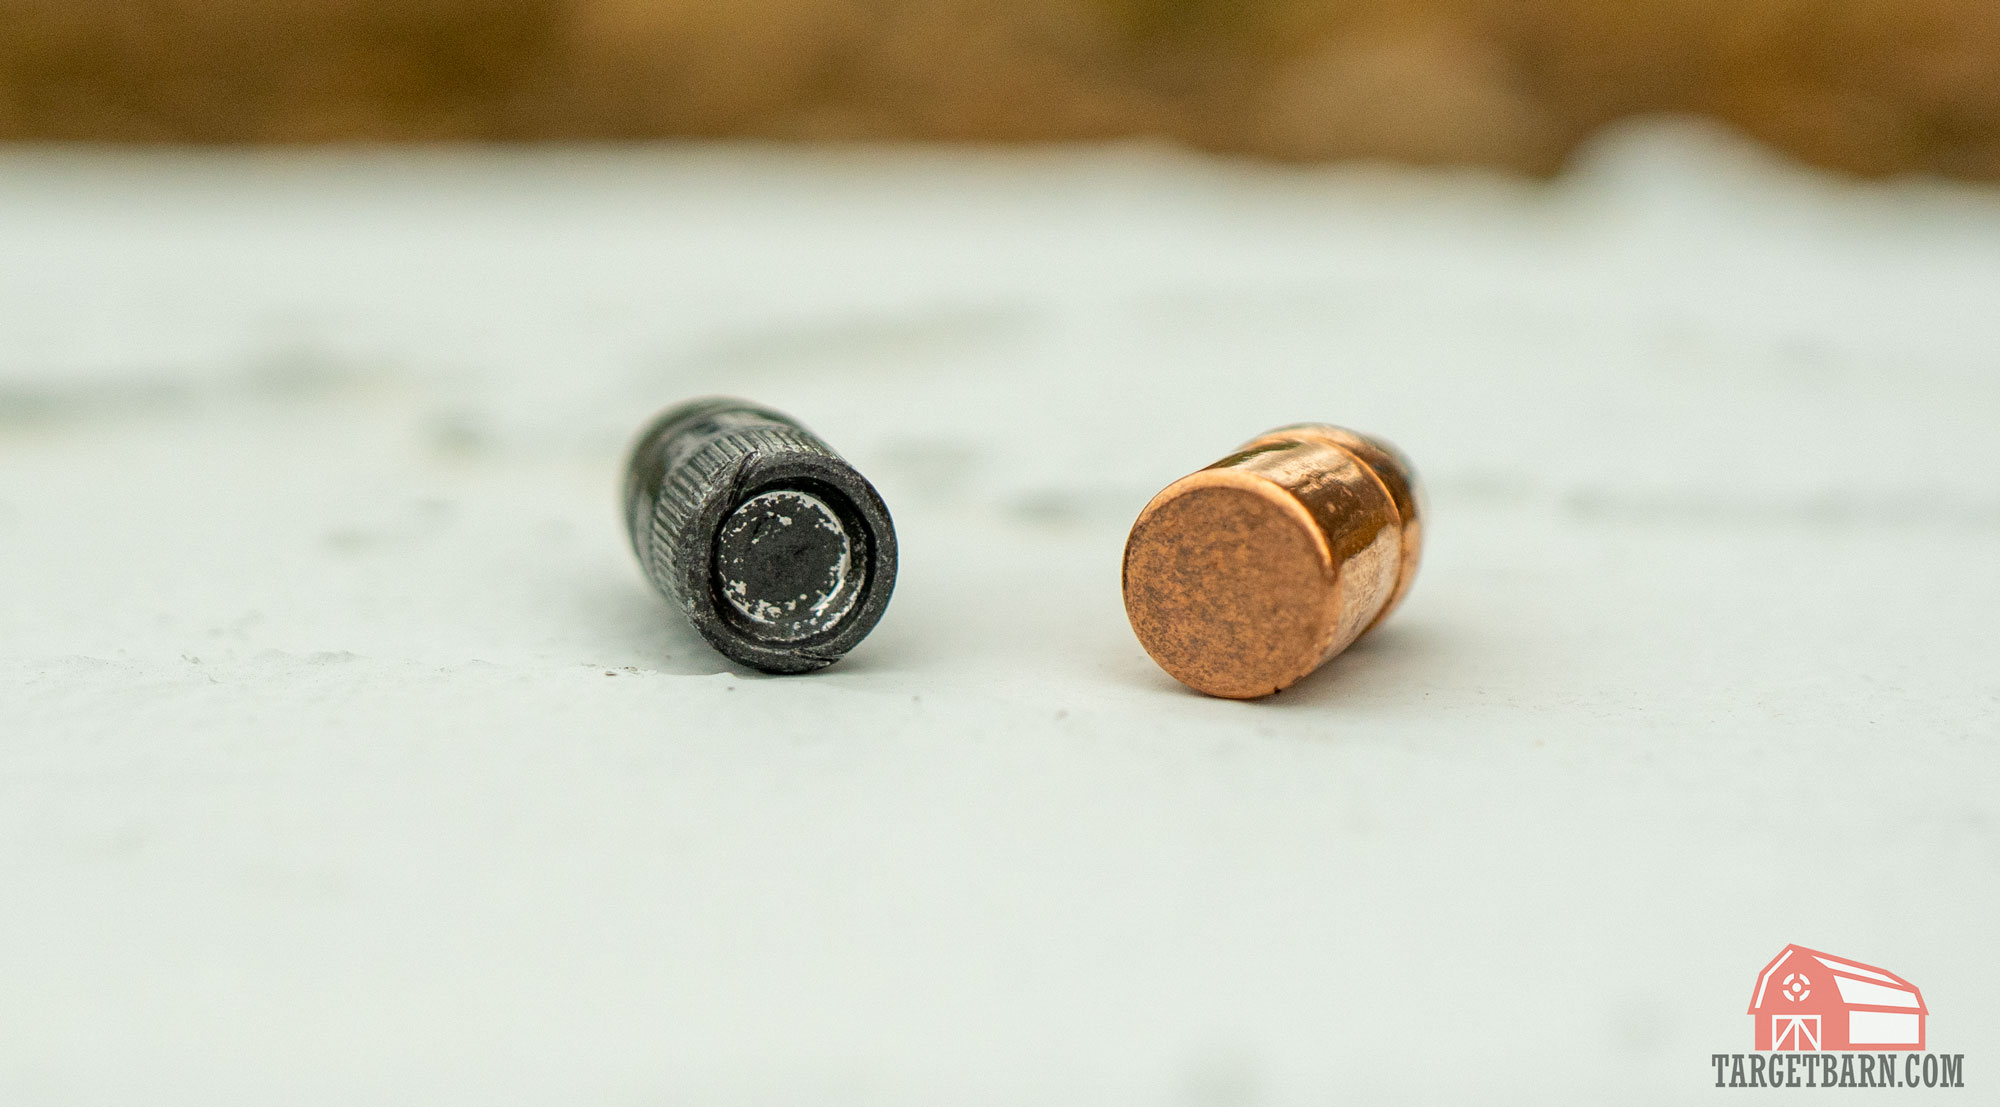 an lrn bullet next to an fmj bullet